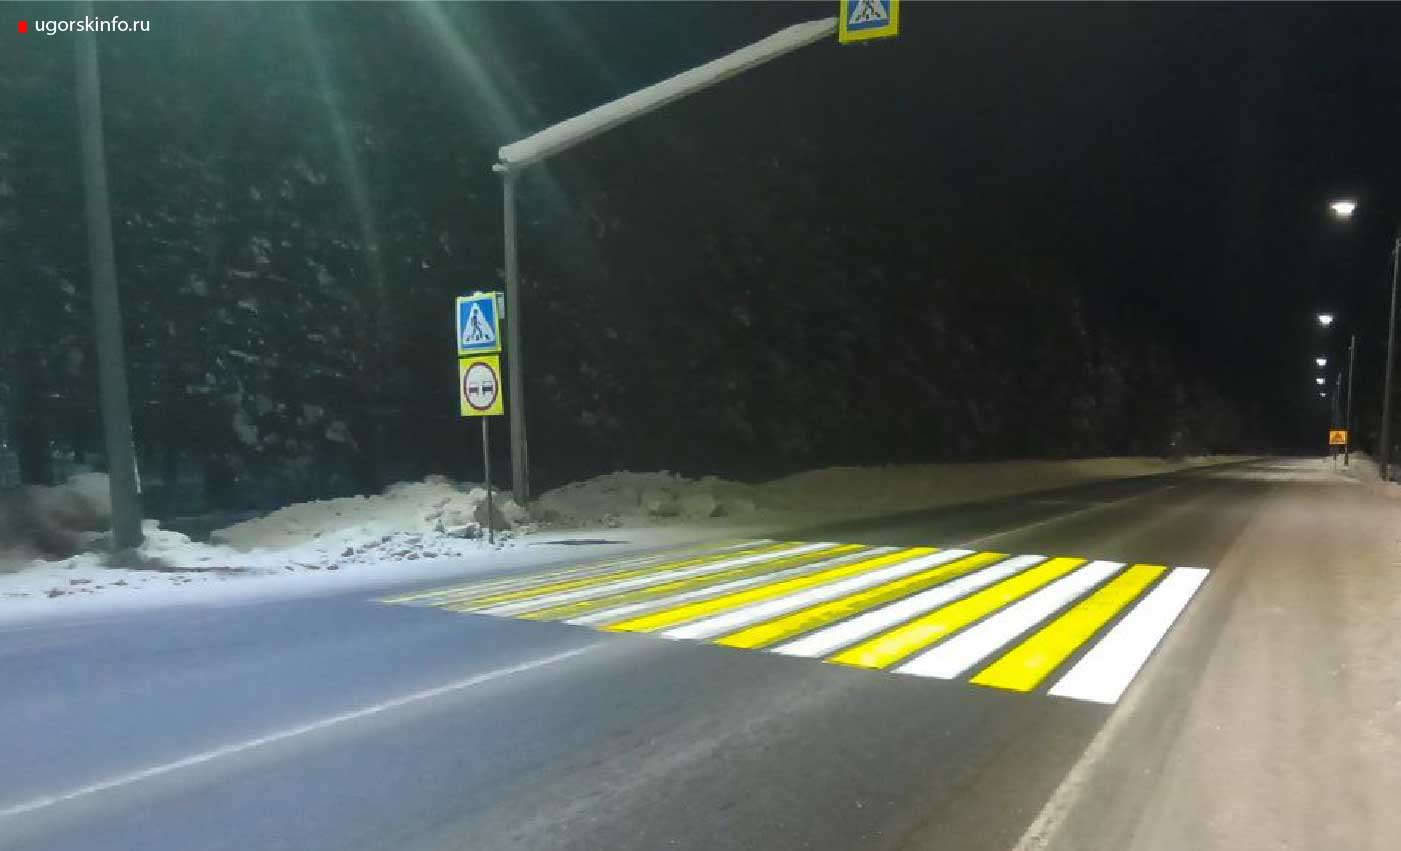 В Югорске действует проекционный пешеходный переход.